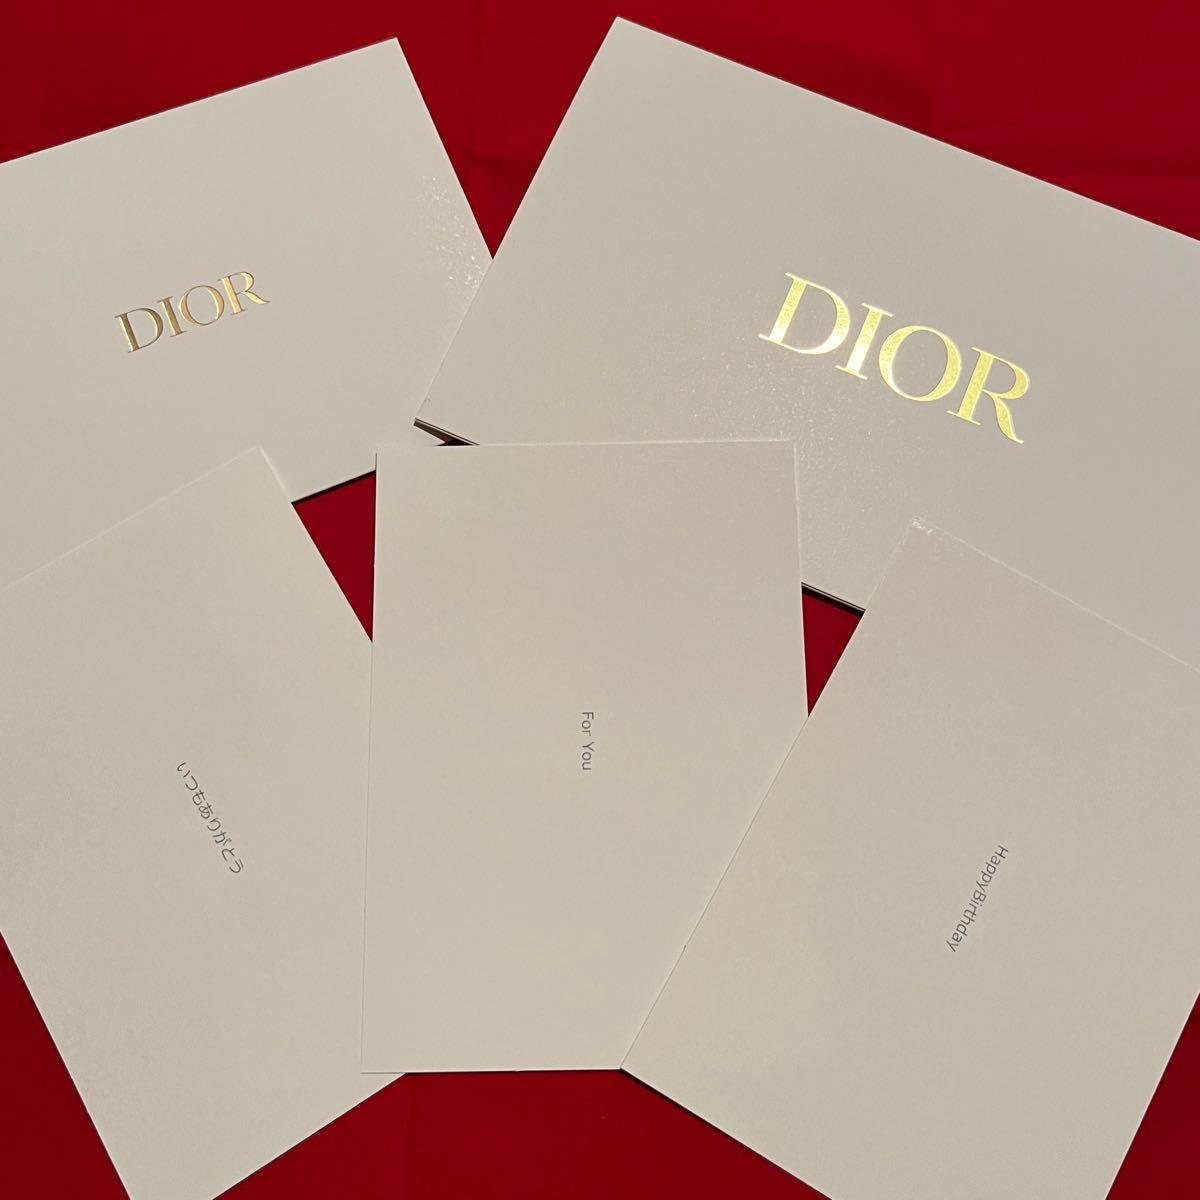 ディオール Dior バレンタイン限定 ギフトボックス プレゼントボックス ラッピングボックス BOX 箱 リボン ノベルティ